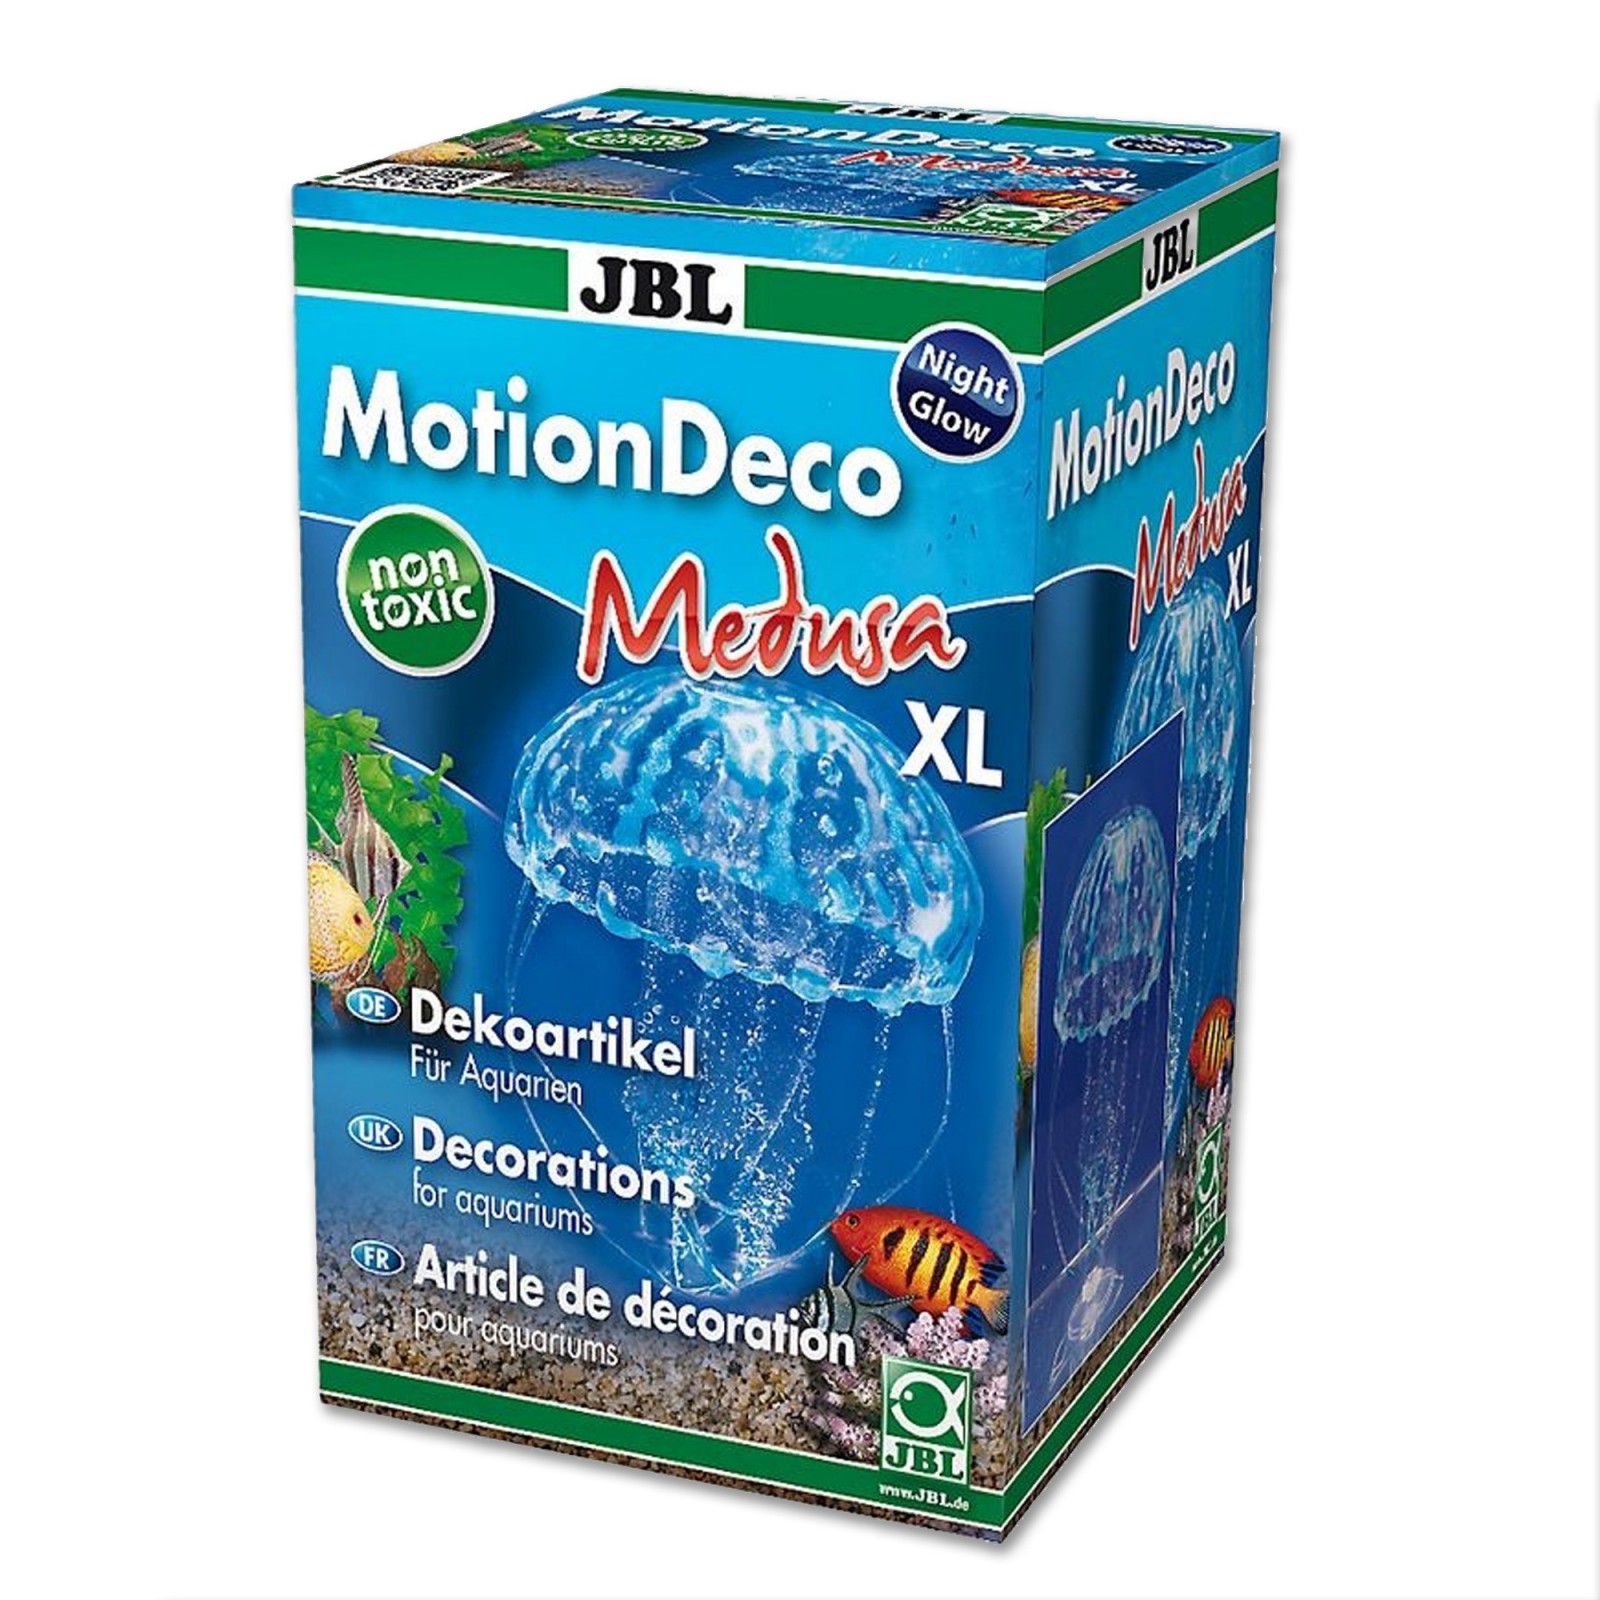 JBL MotionDeco Medusa XL Blue decorazione per acquario